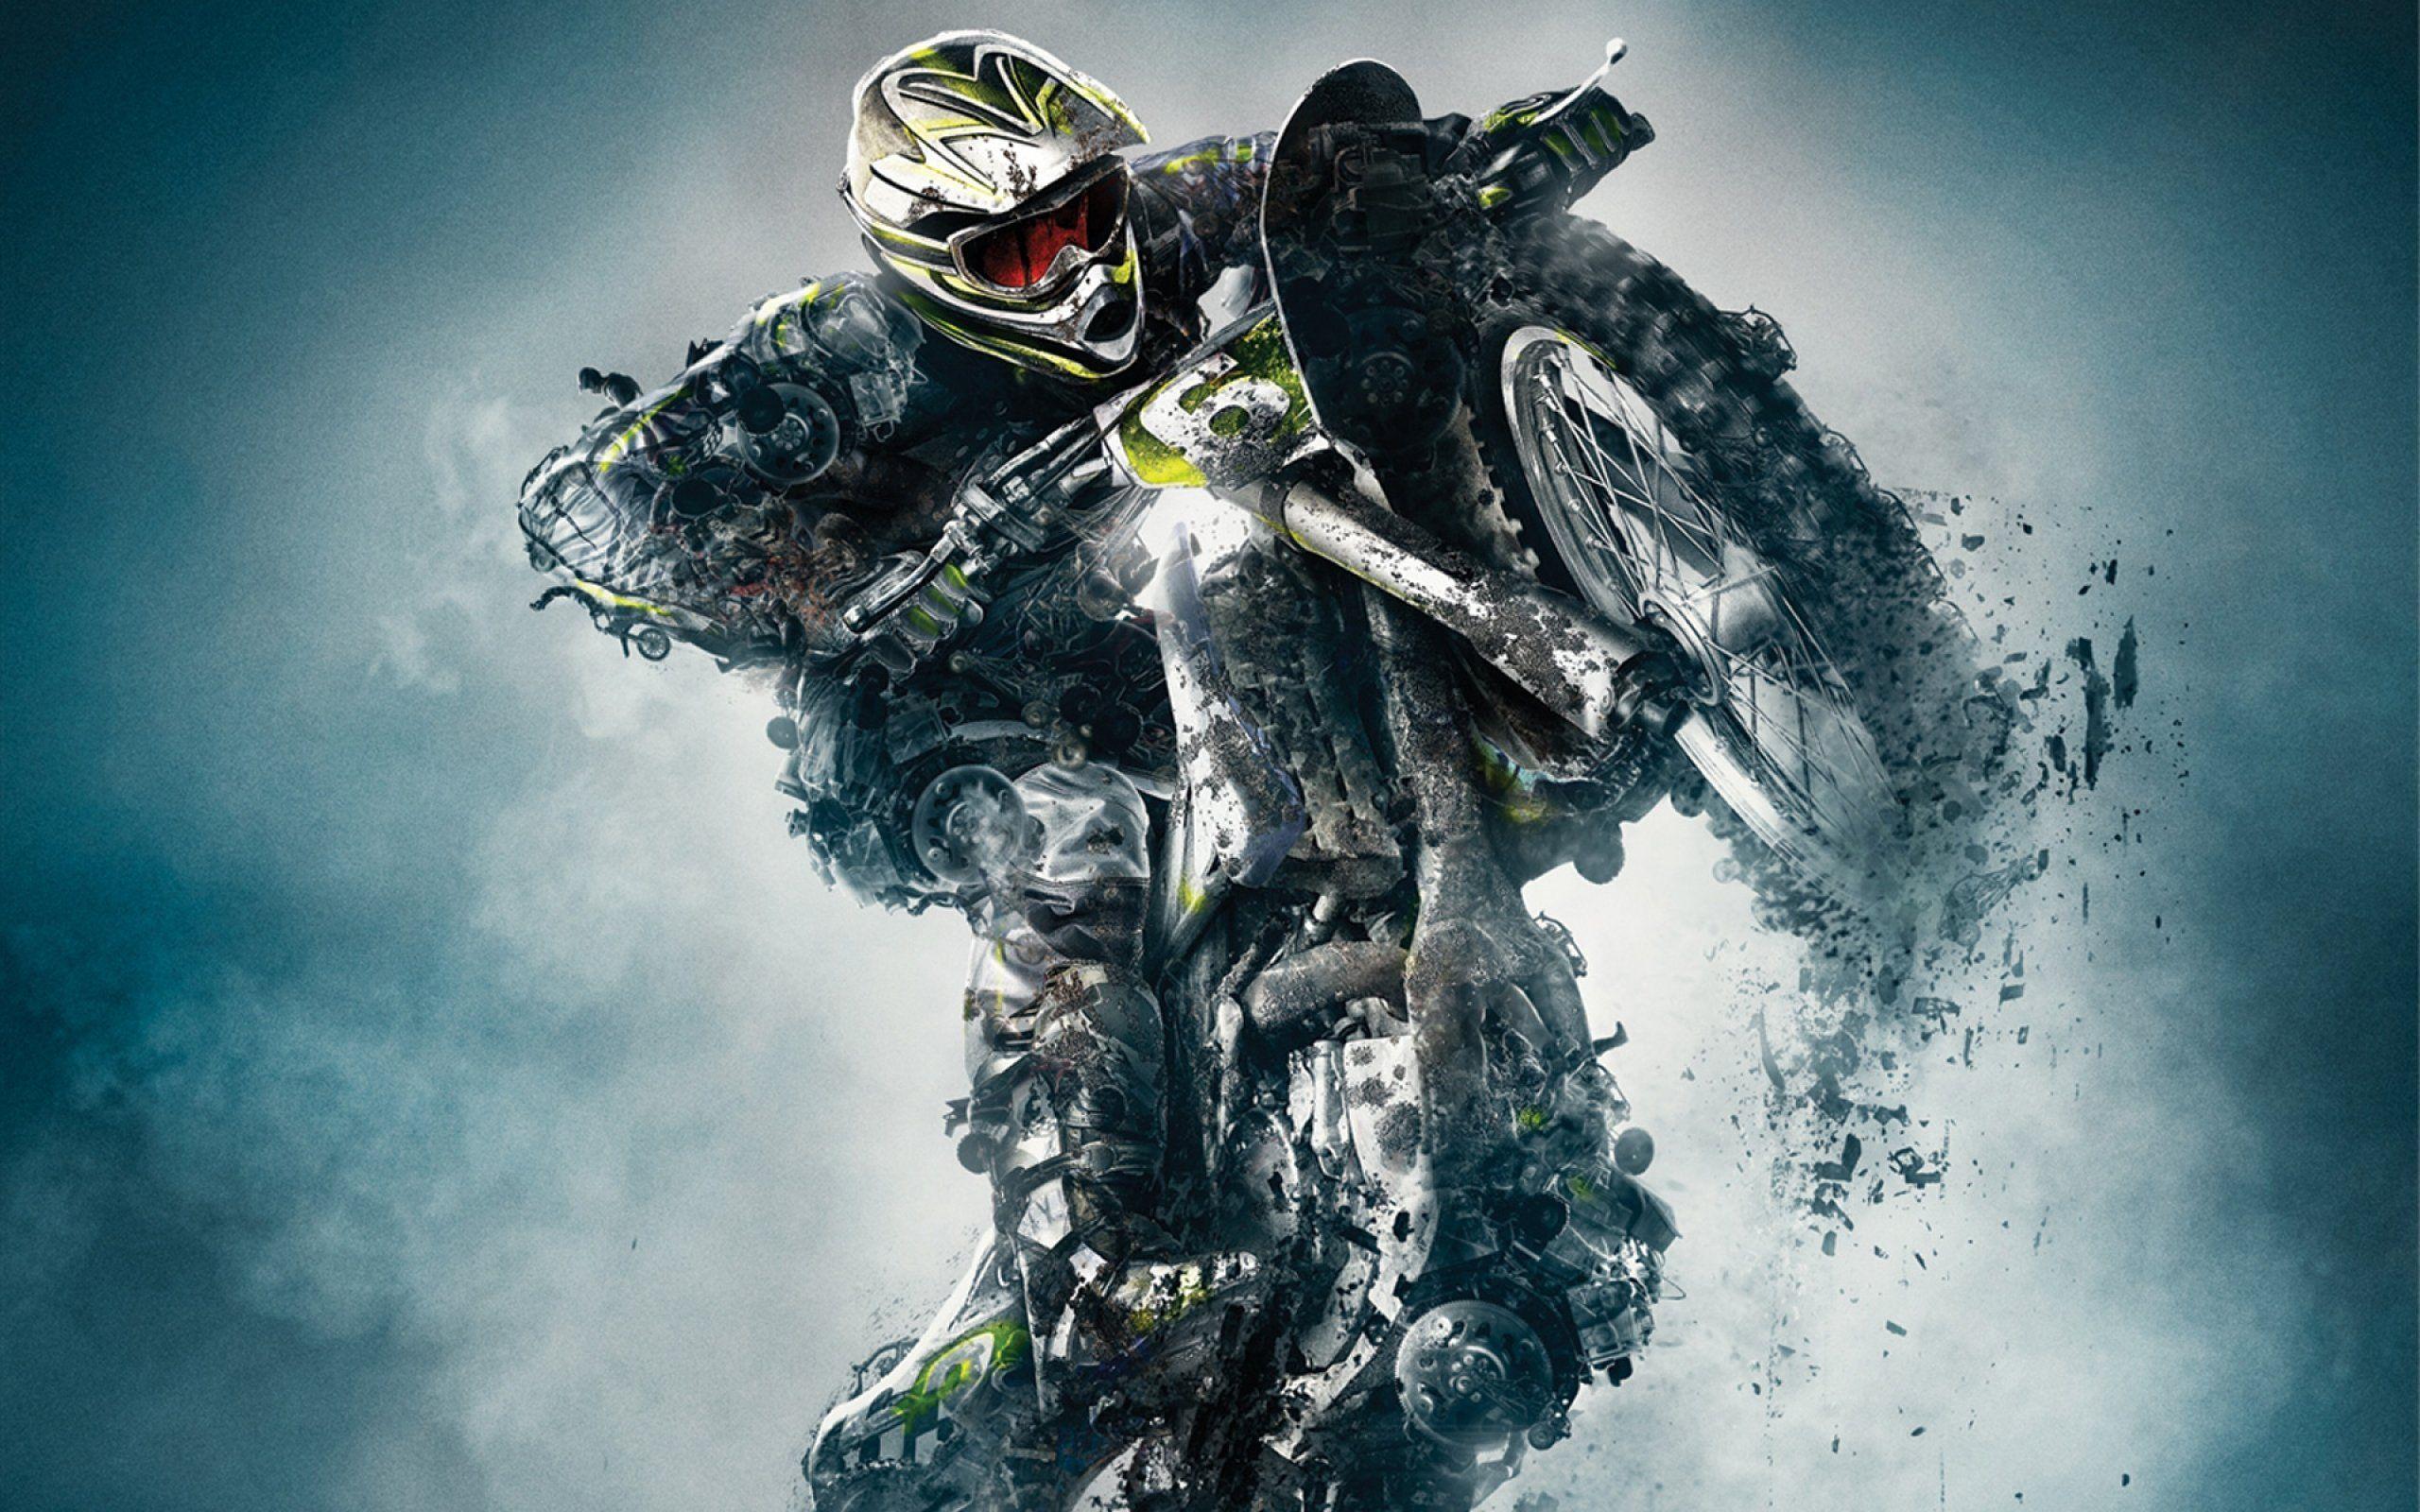 Ultra Hd Dirt Bike Wallpaper 4K : Motocross 4K Wallpapers | HD ...